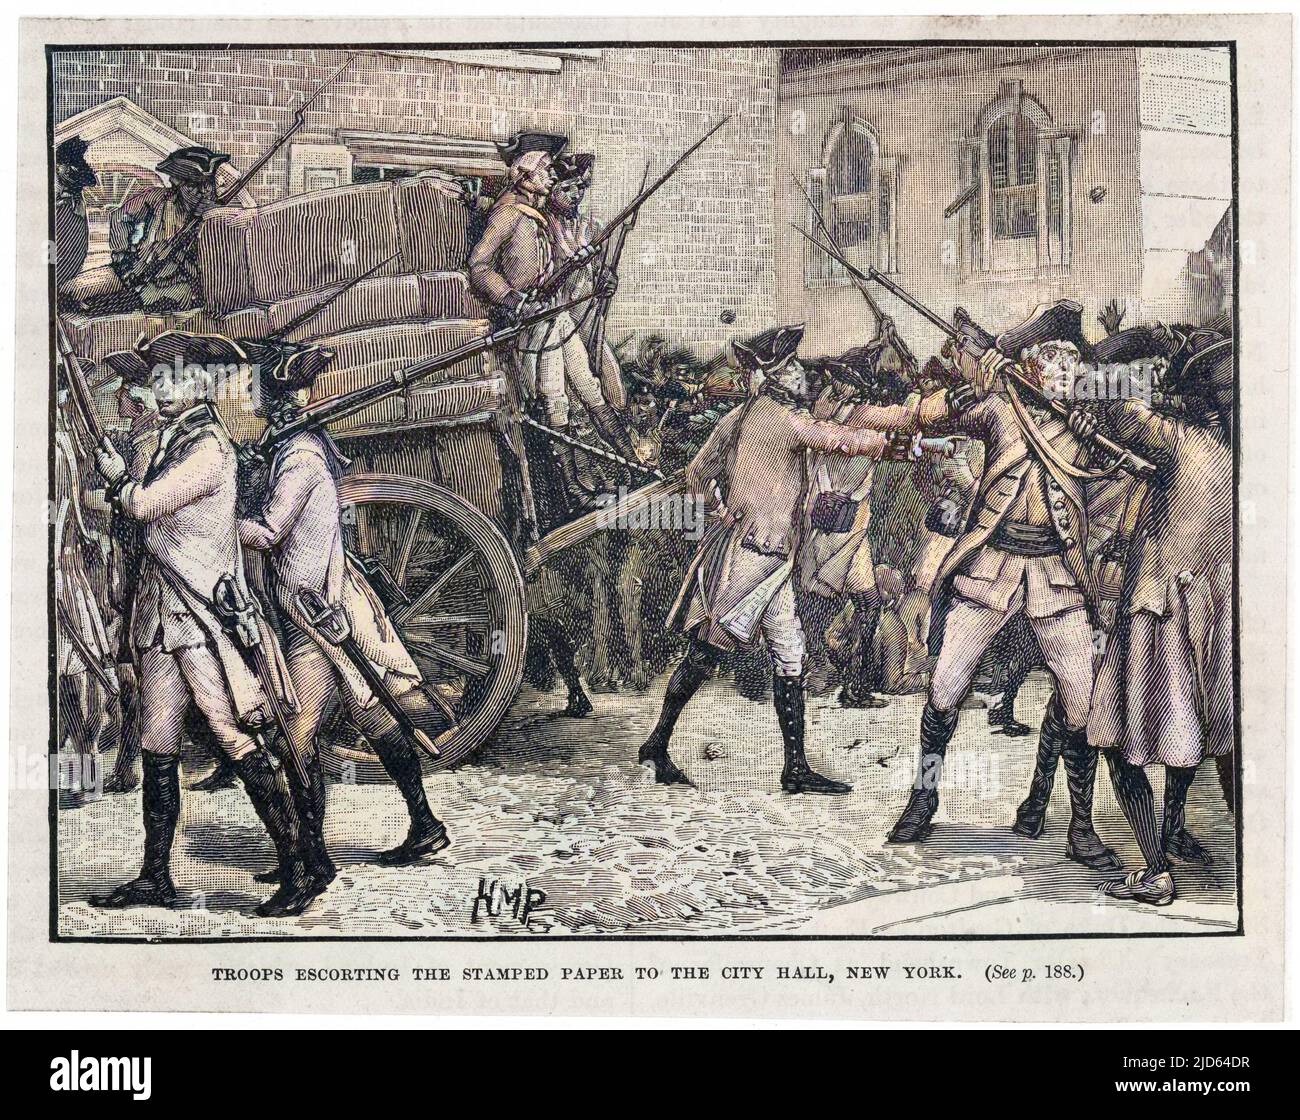 Stamp Act eingeführt in New York - Truppen eskortieren das gestempelte Papier zum Rathaus, New York Colorized Version von : 10001854 Datum: 1765 Stockfoto